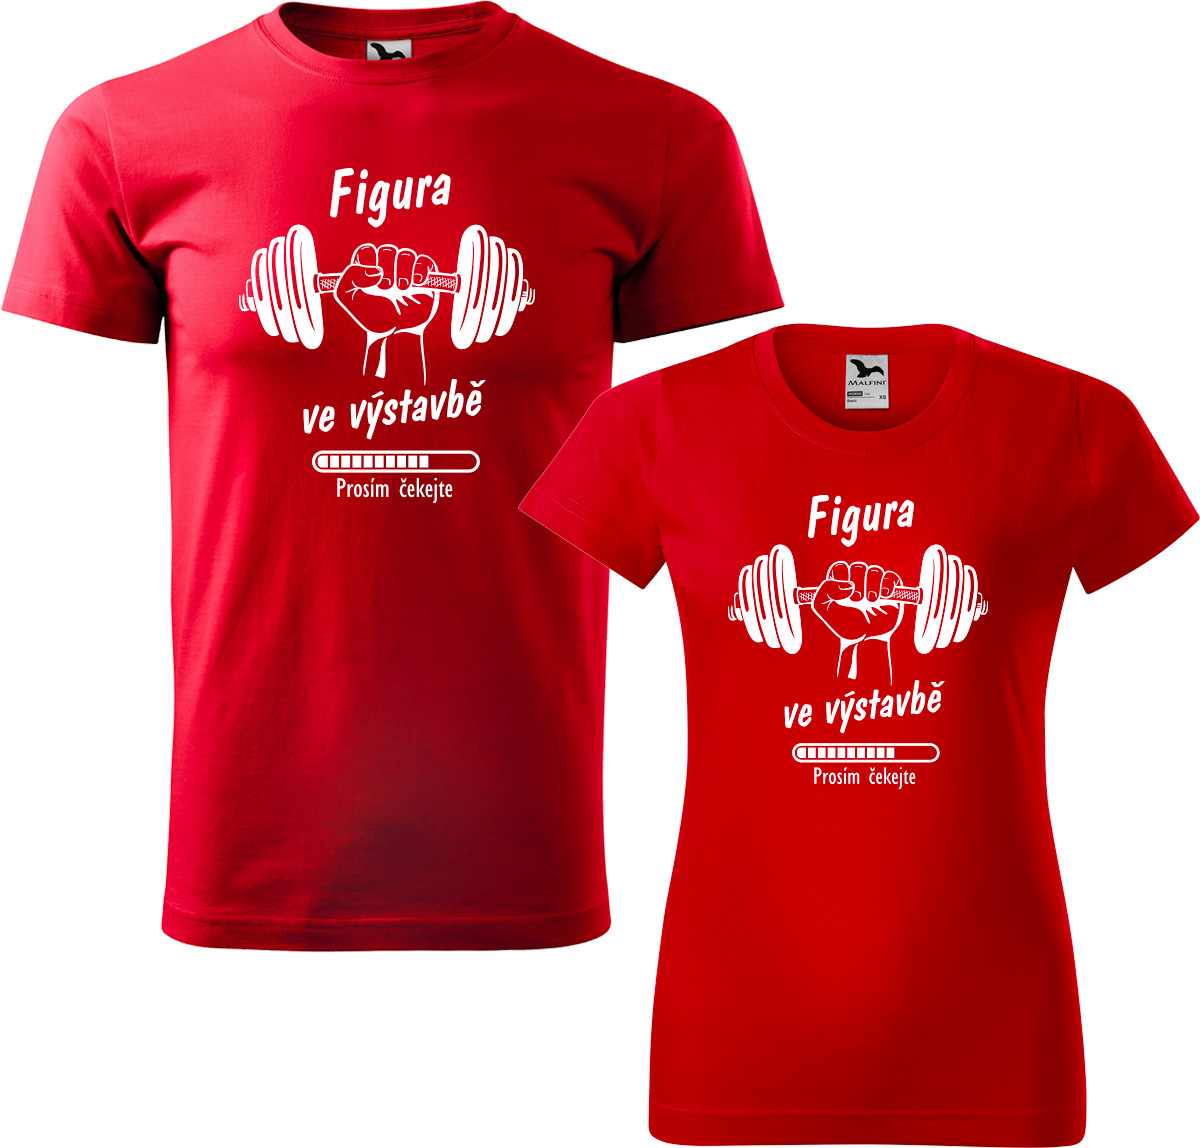 Trička pro páry - Figura ve výstavbě Barva: Červená (07), Velikost dámské tričko: S, Velikost pánské tričko: M